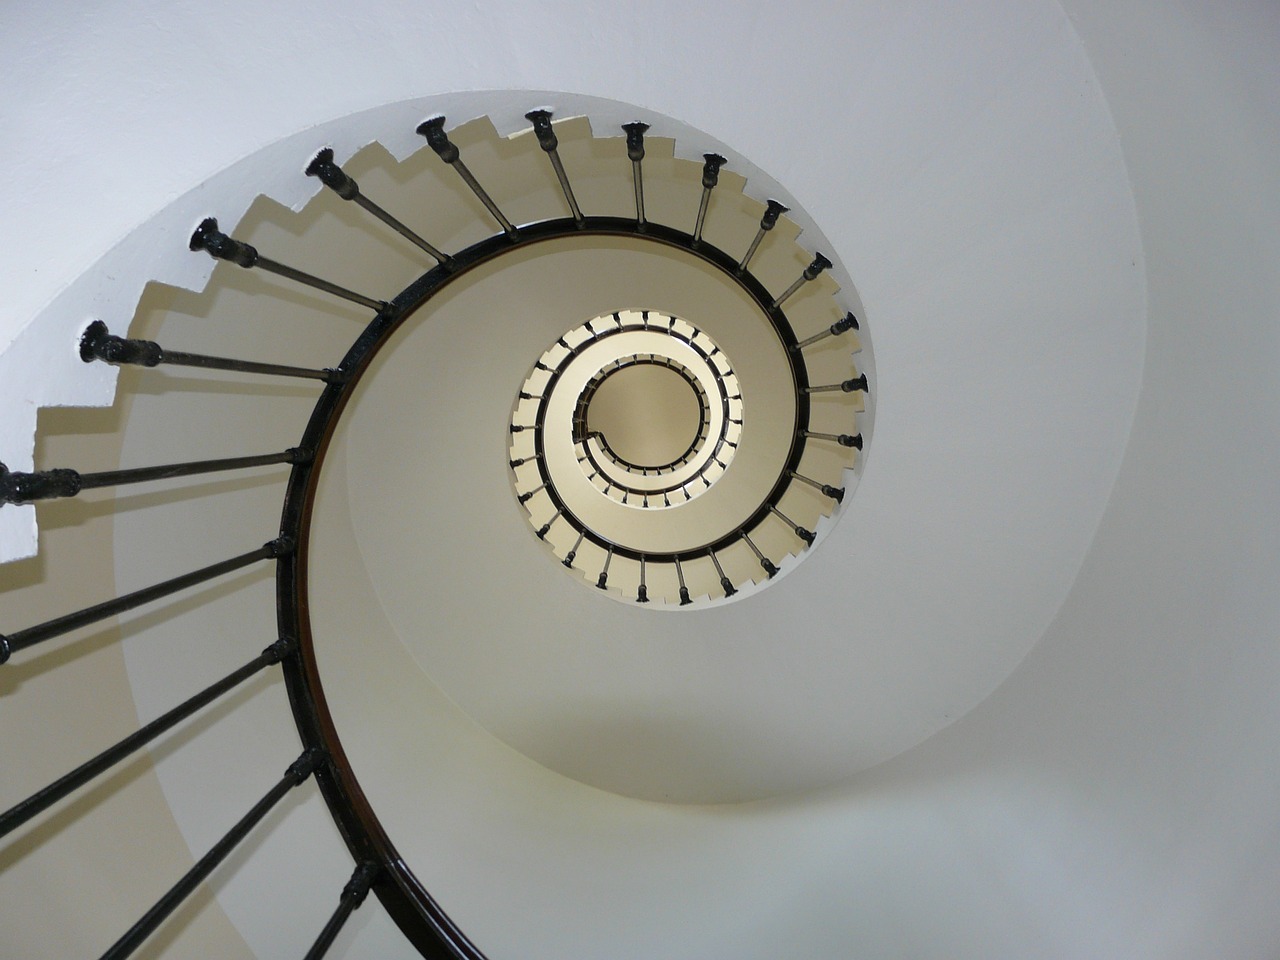 Comment choisir et concevoir un escalier sur mesure pour votre maison ?